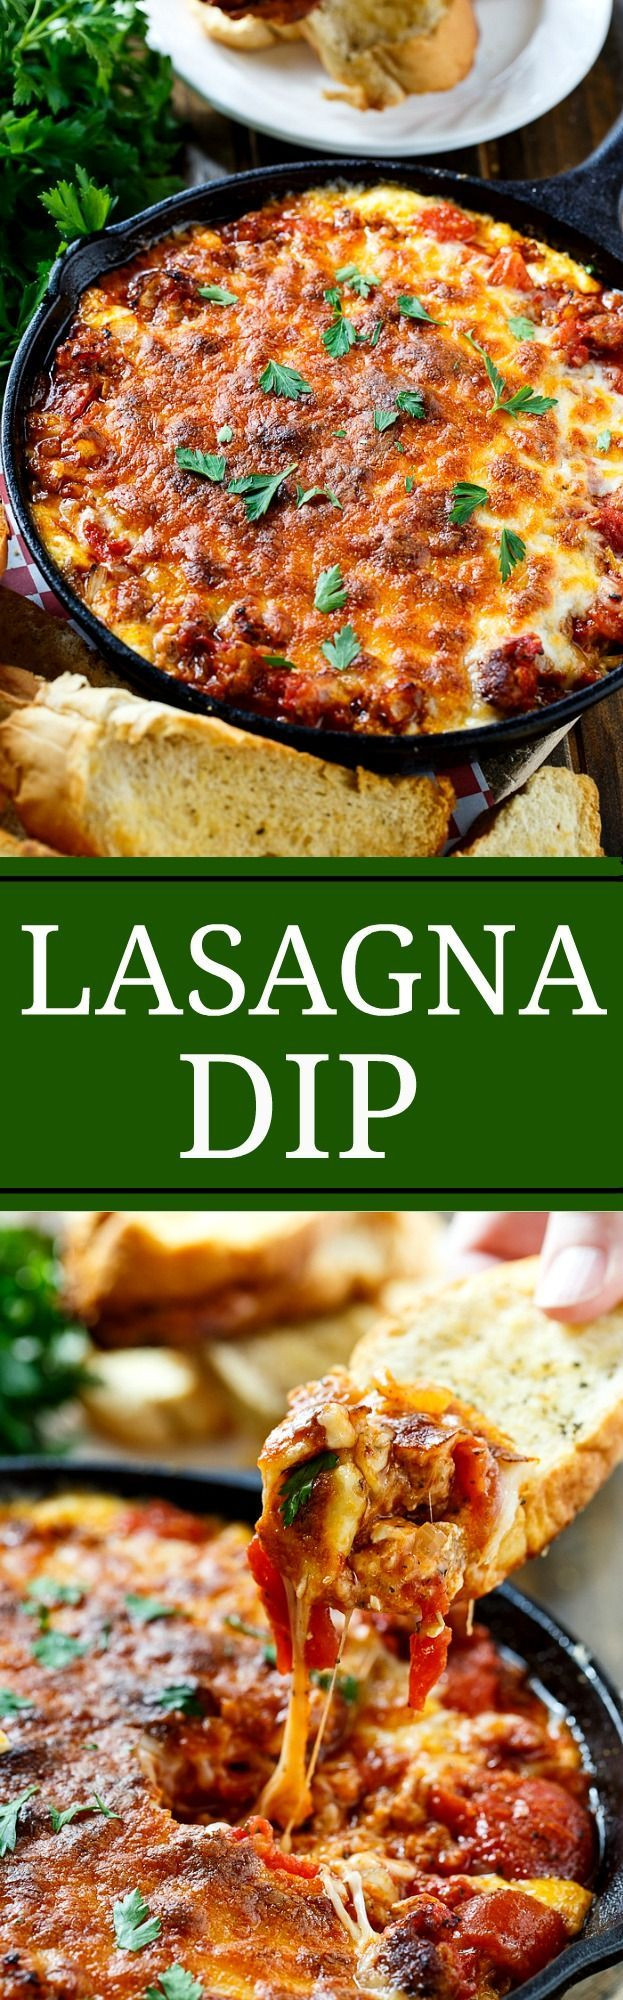 Italian Dips Appetizers
 Best 25 Italian appetizers ideas on Pinterest